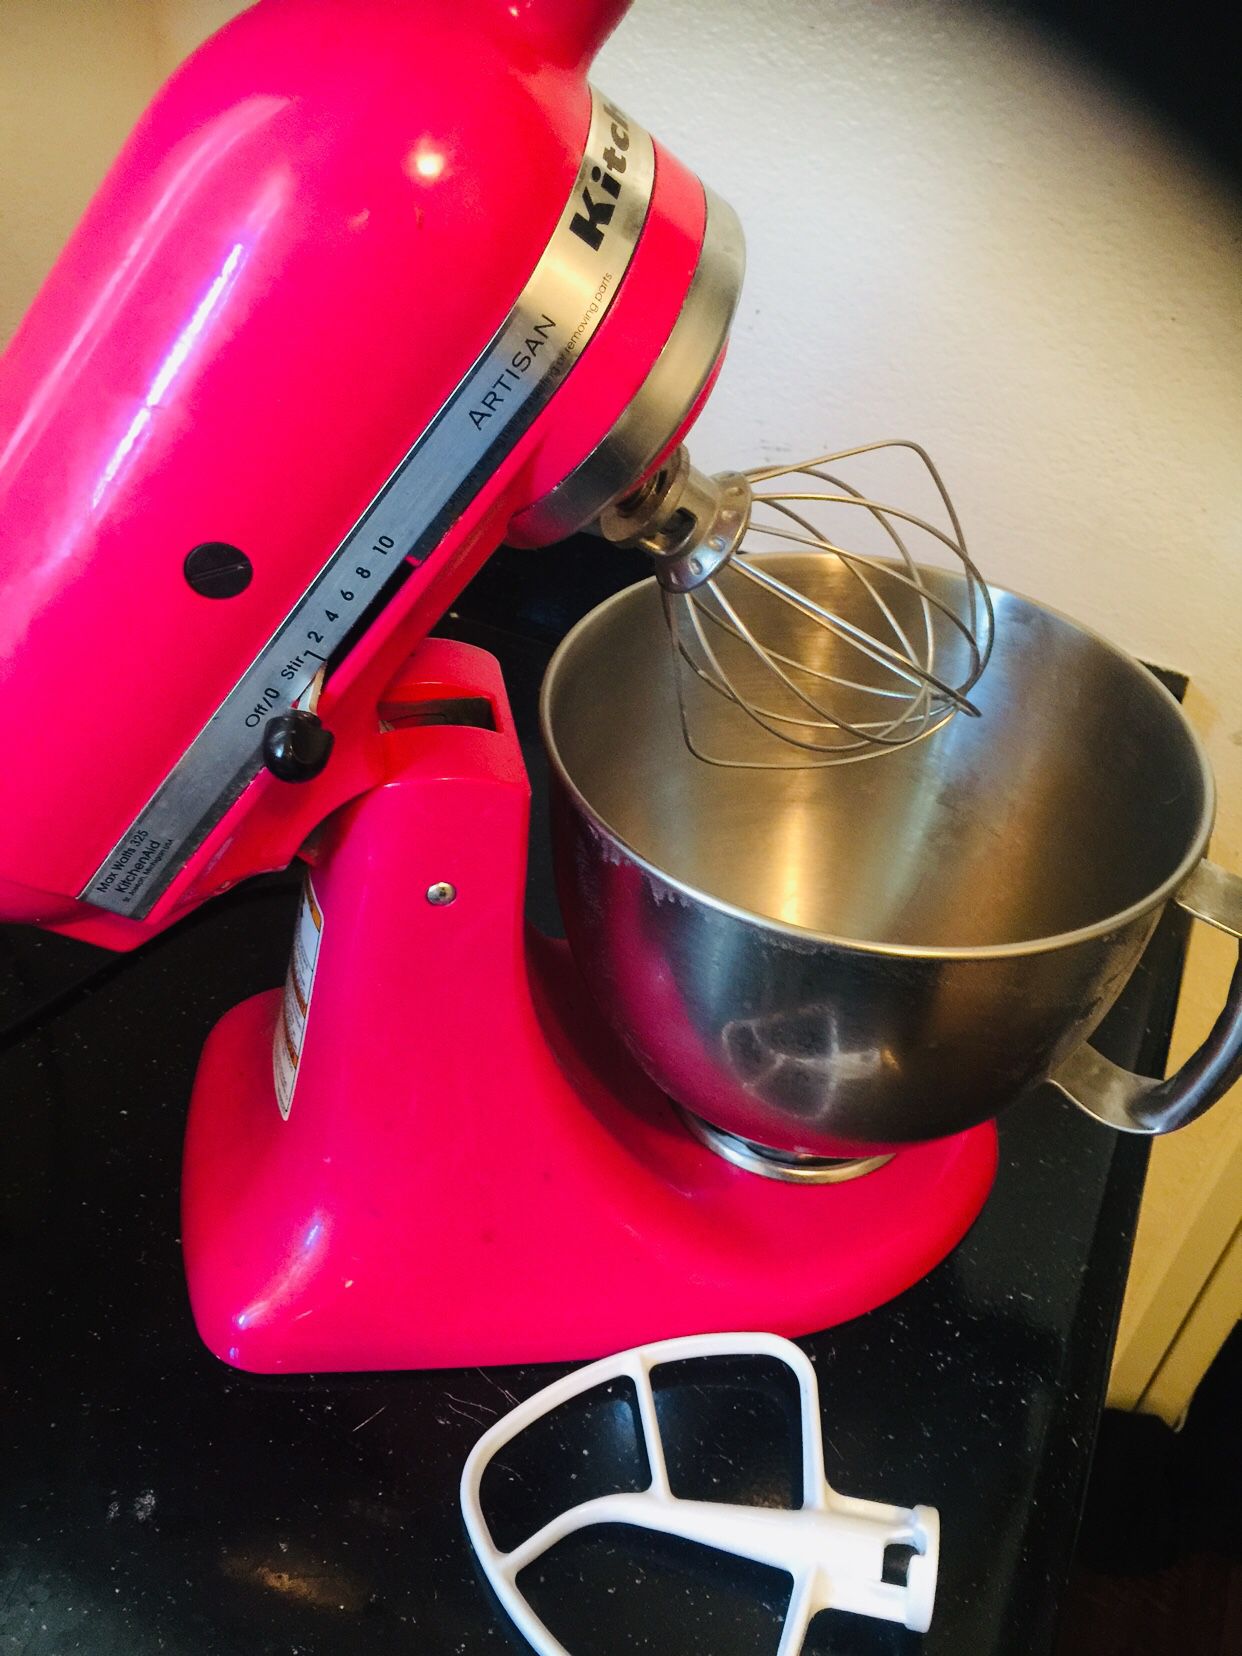 Pink kitchen aid stand mixer